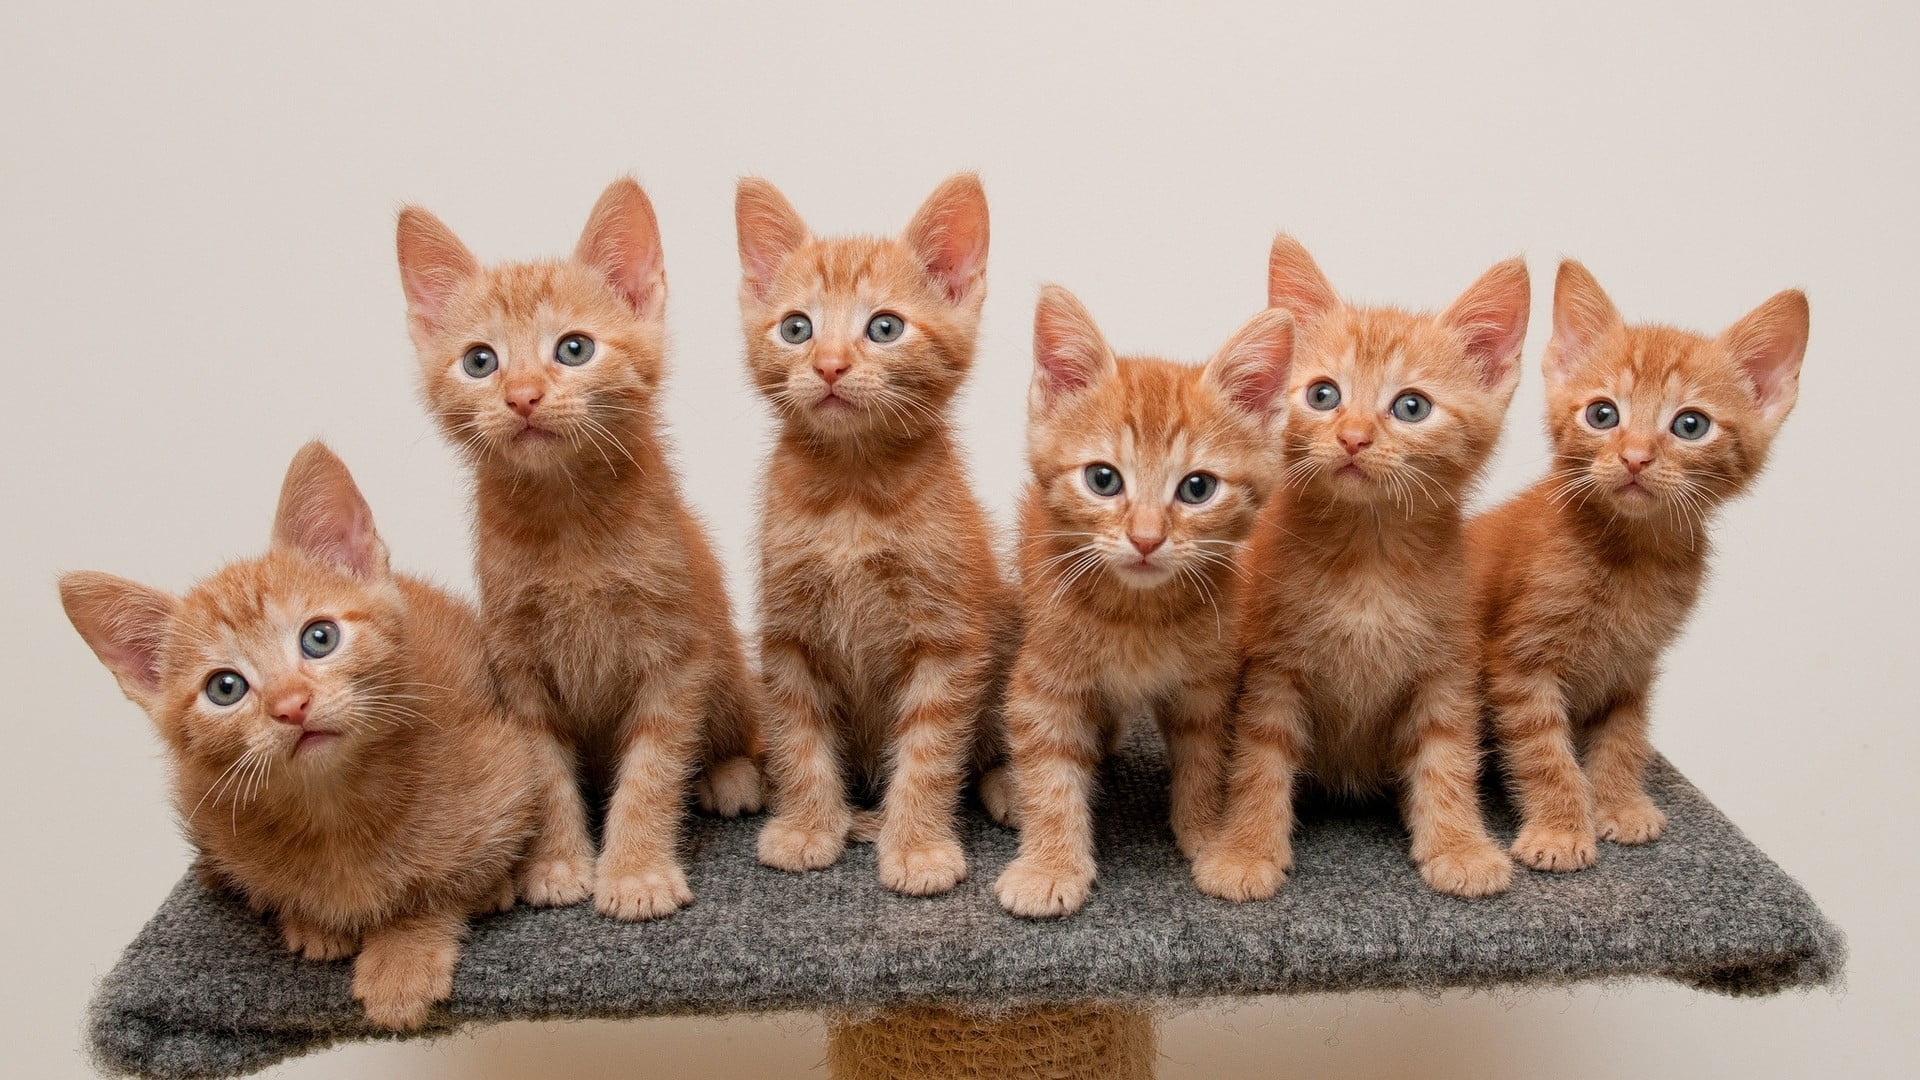 six orange tabby kittens, animals, cat, baby animals, sitting